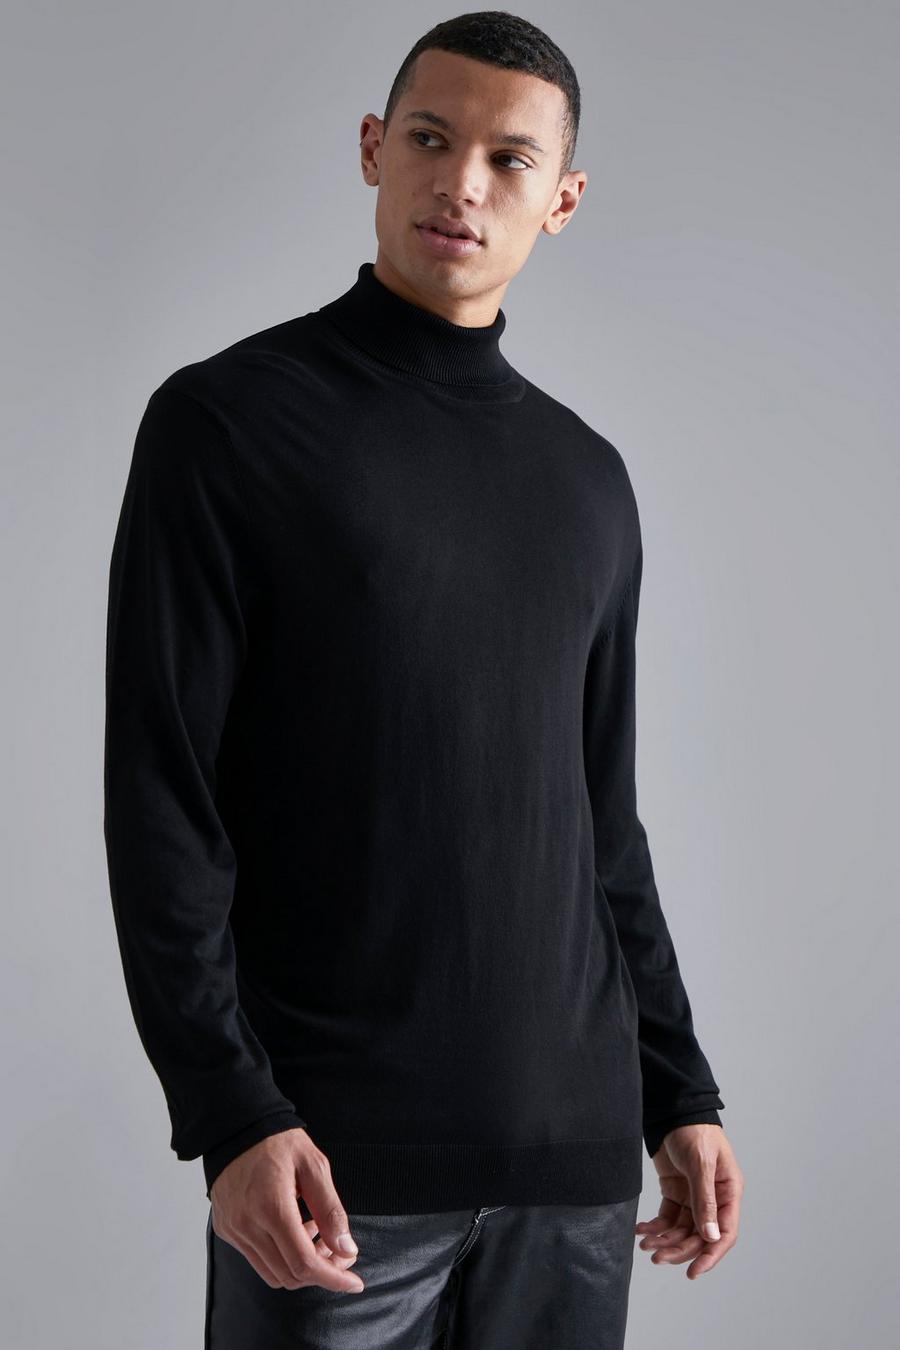 שחור black סוודר בגזרה רגילה מבד ממוחזר עם צווארון נגלל, לגברים גבוהים